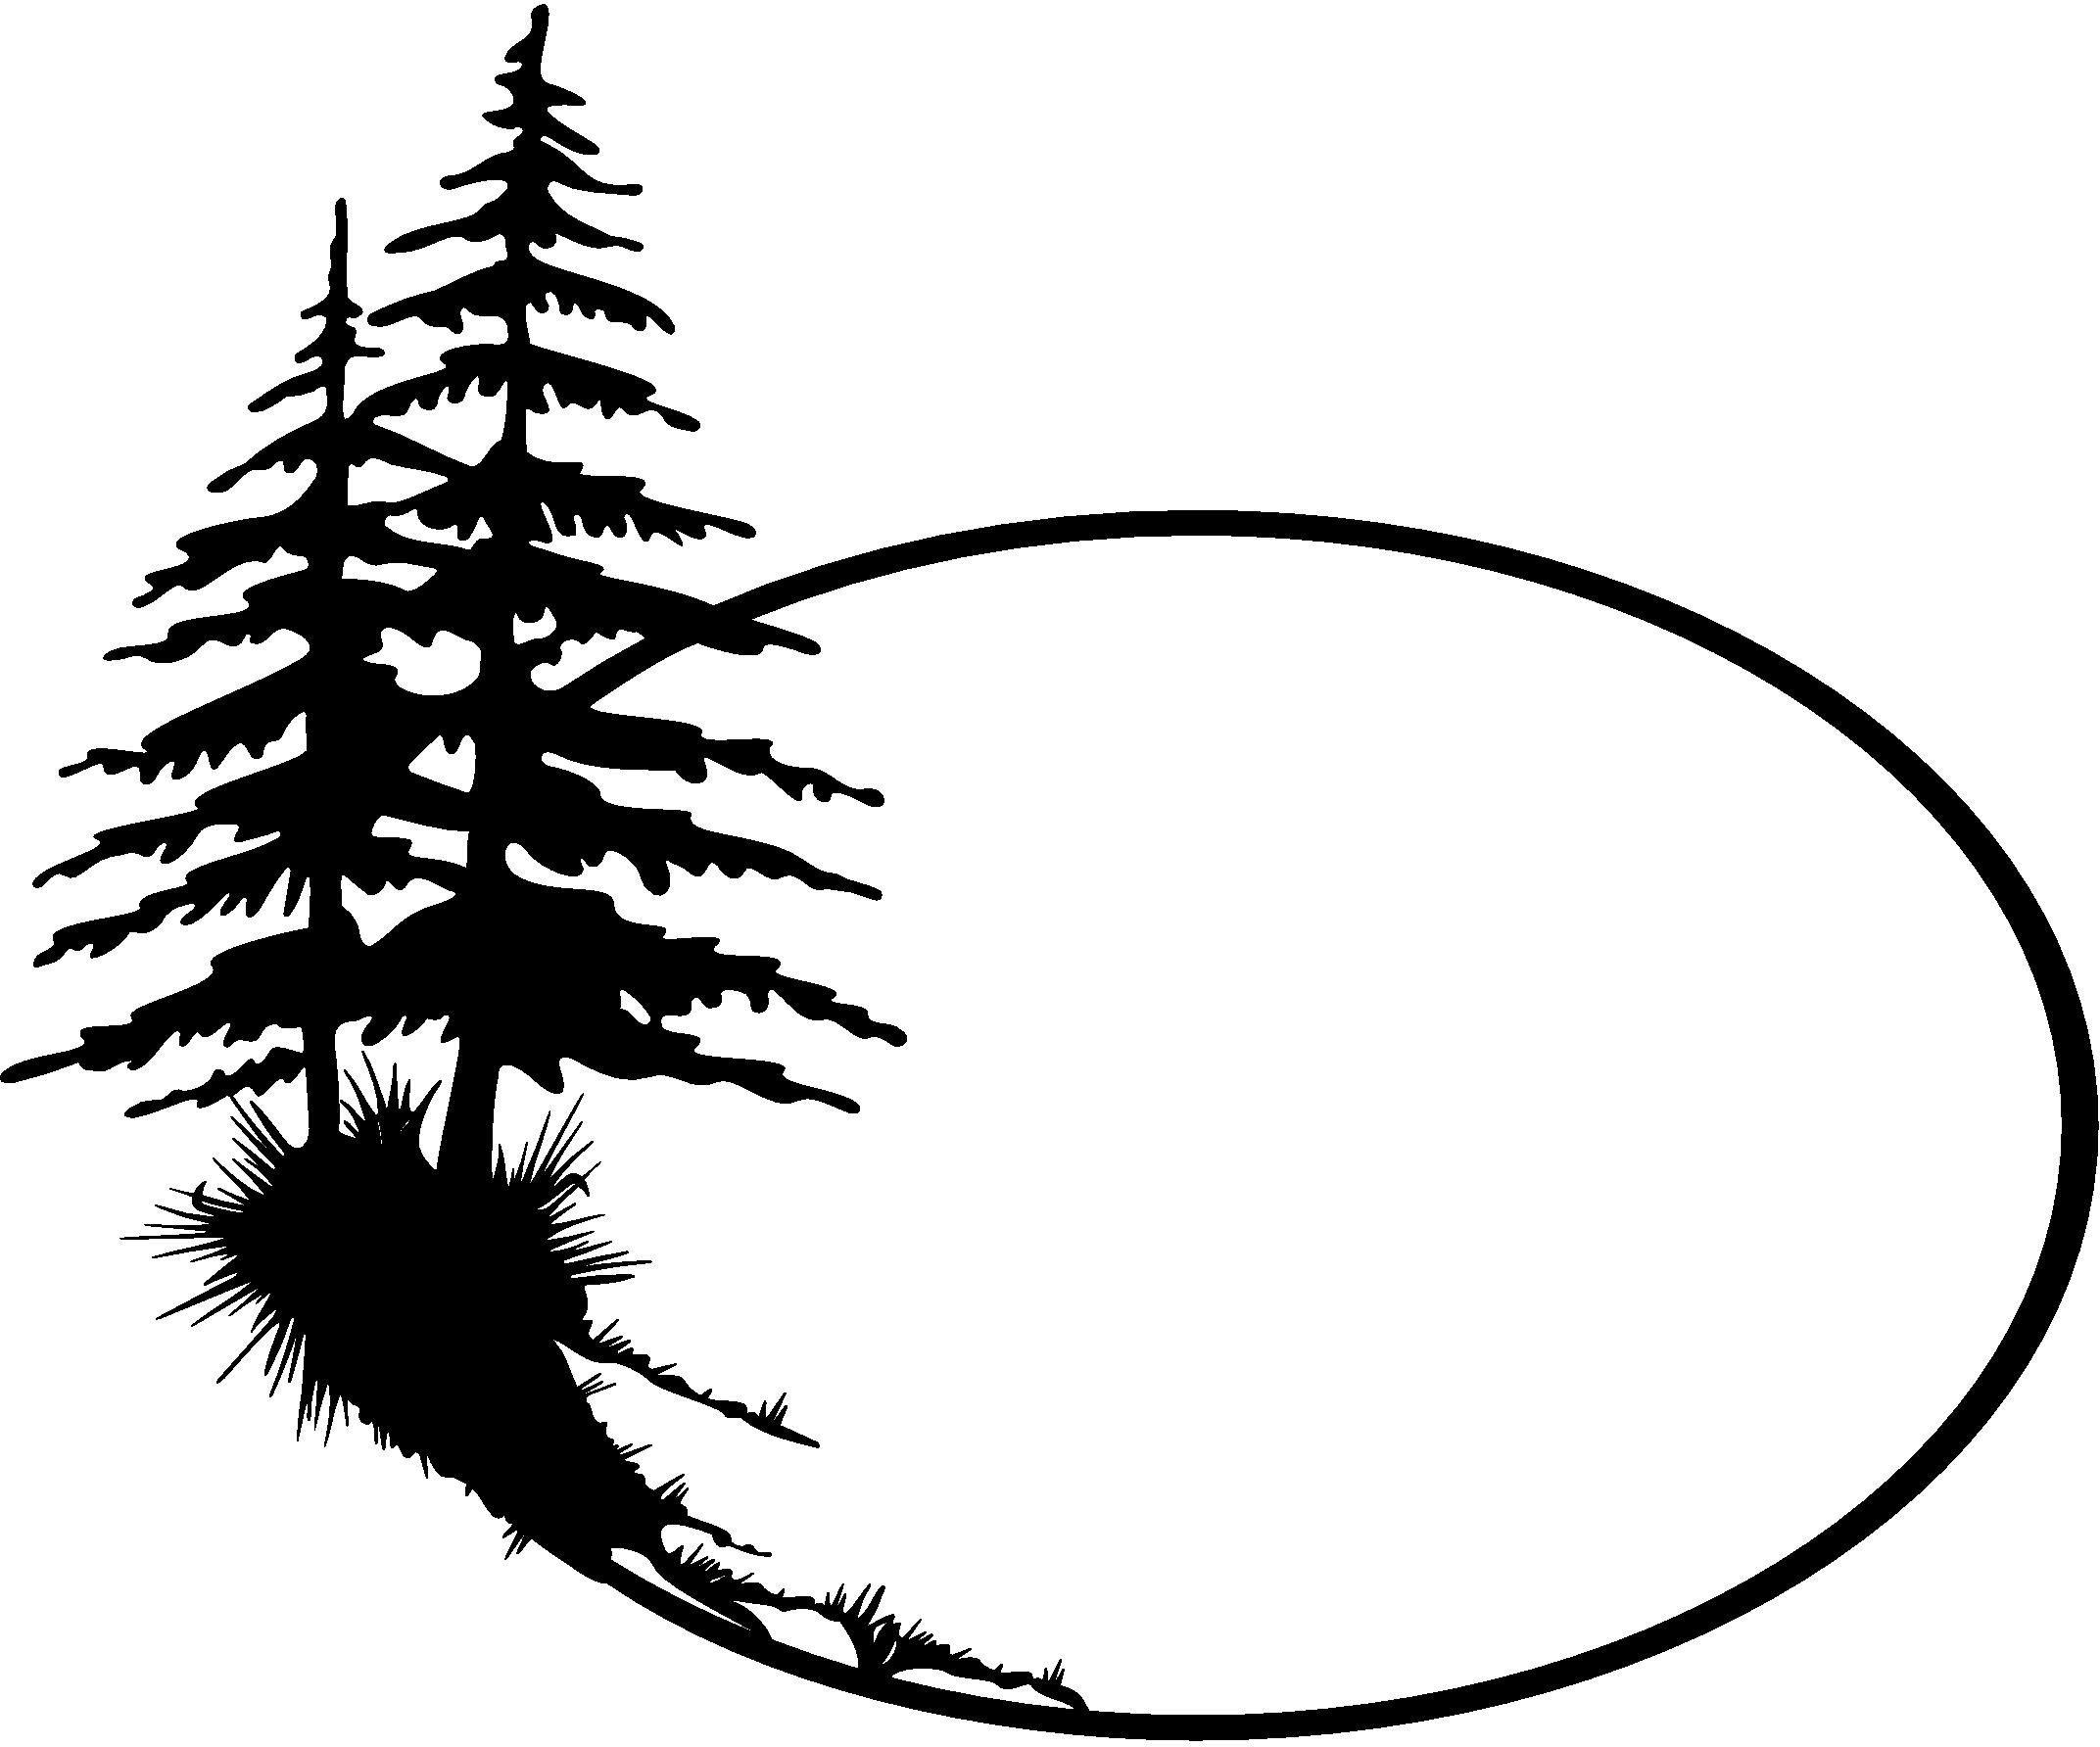 Douglas fir tree silhouette clipart